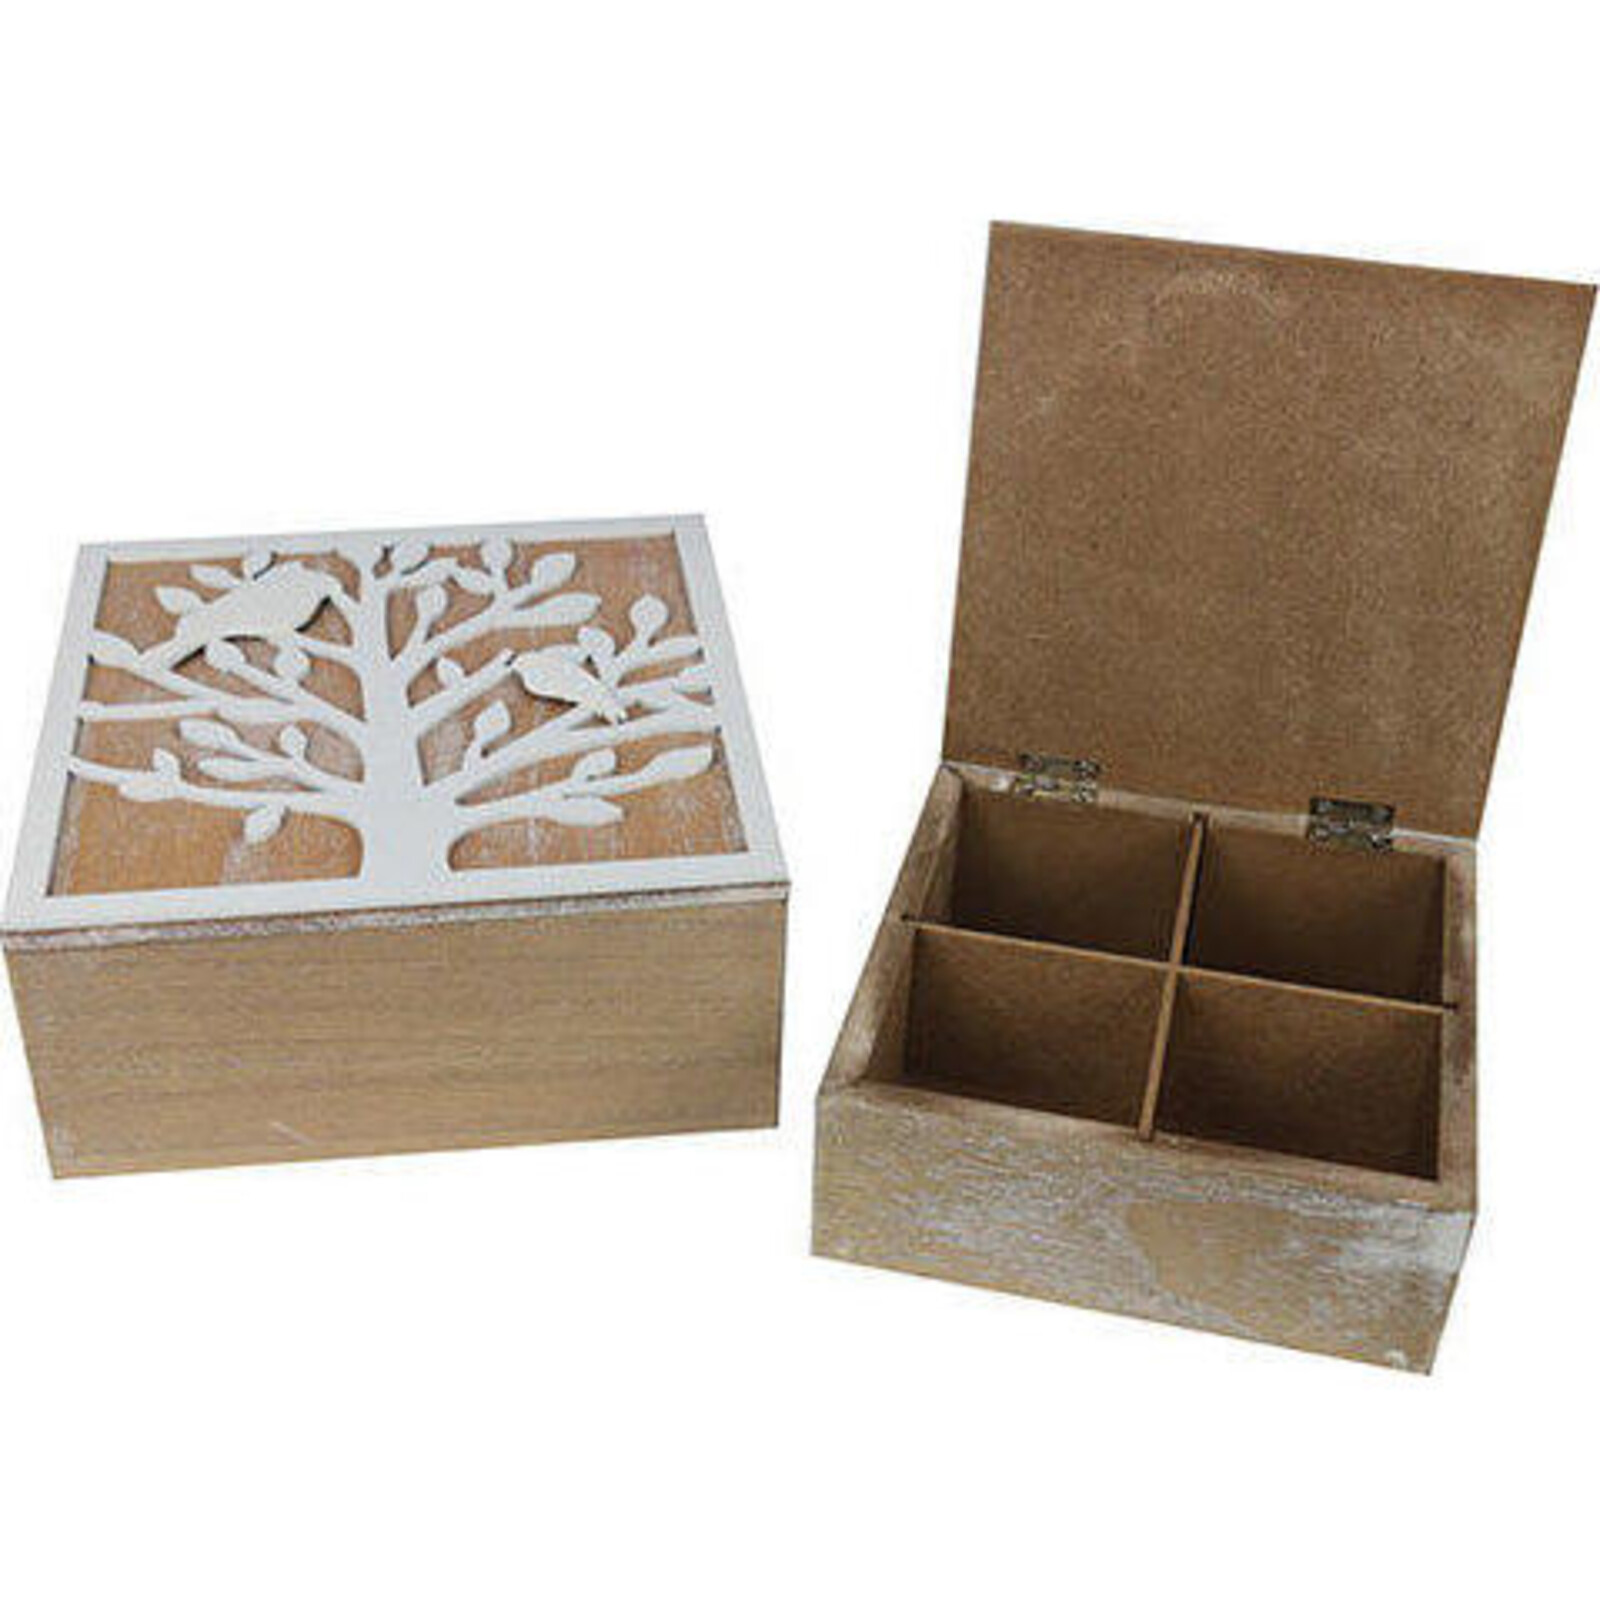 Boxes Treebirds S/s